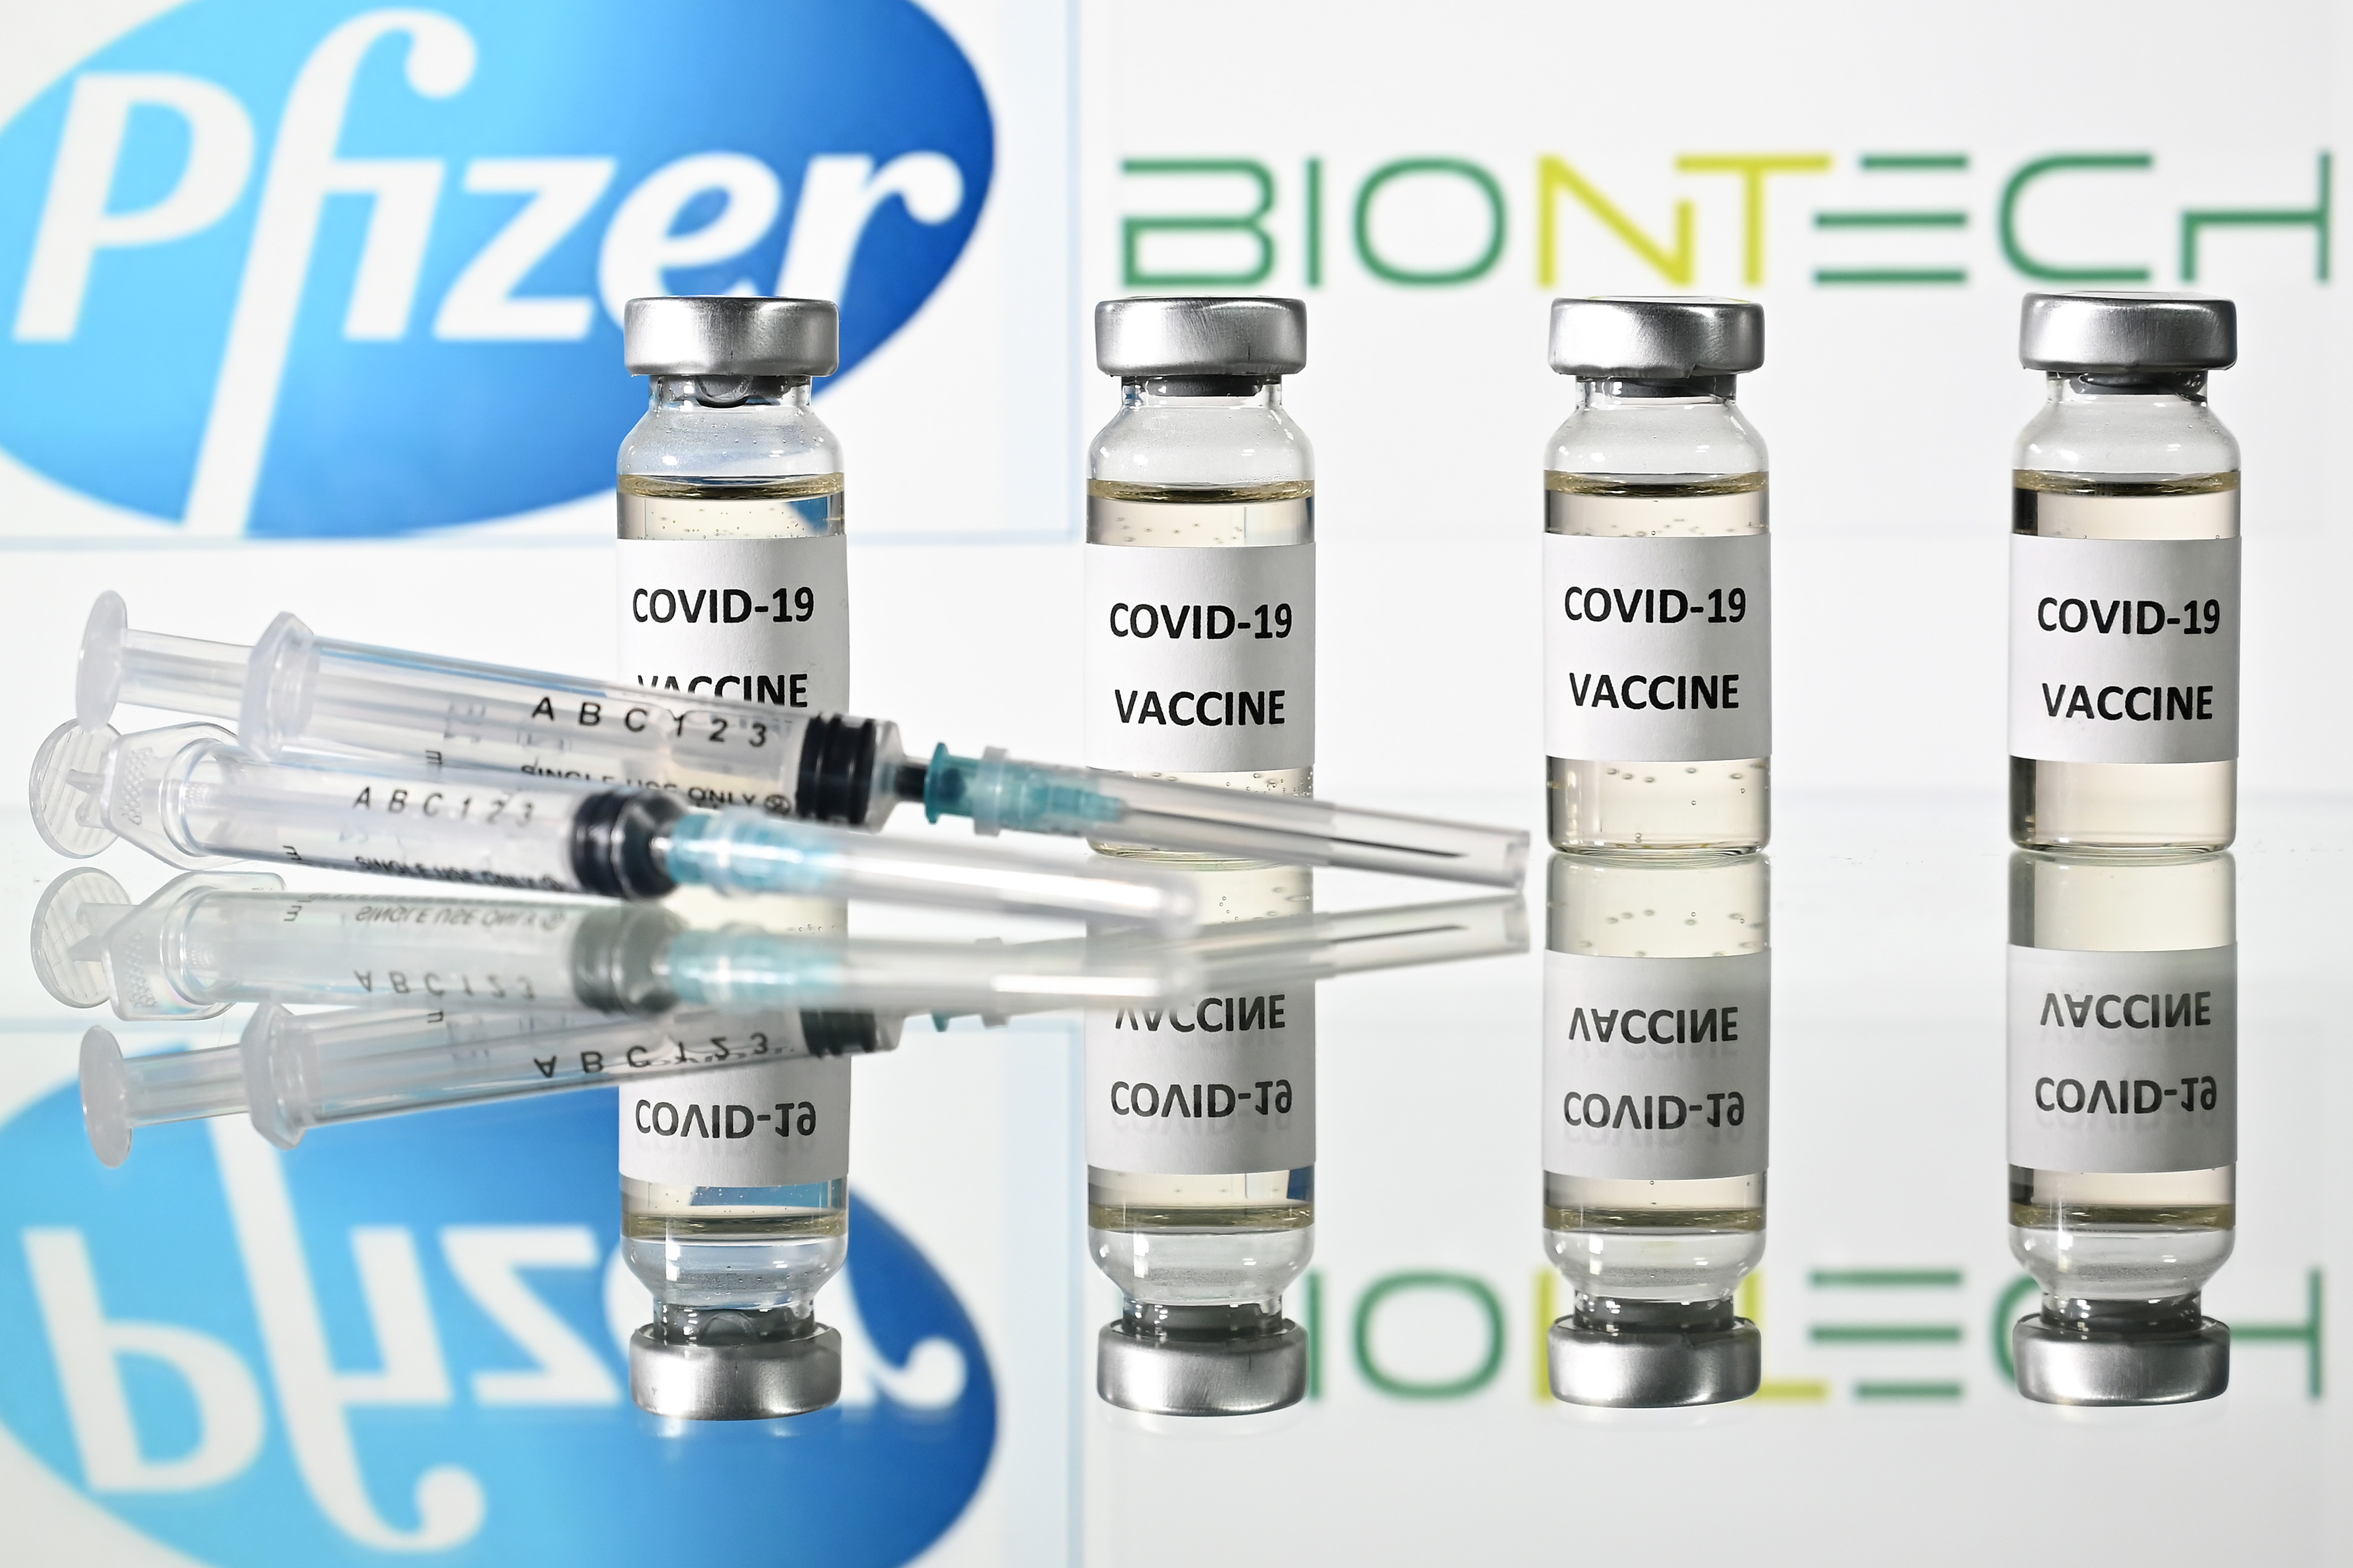 EEUU emite autorización de emergencia para vacuna de Pfizer/BioNTech contra covid-19